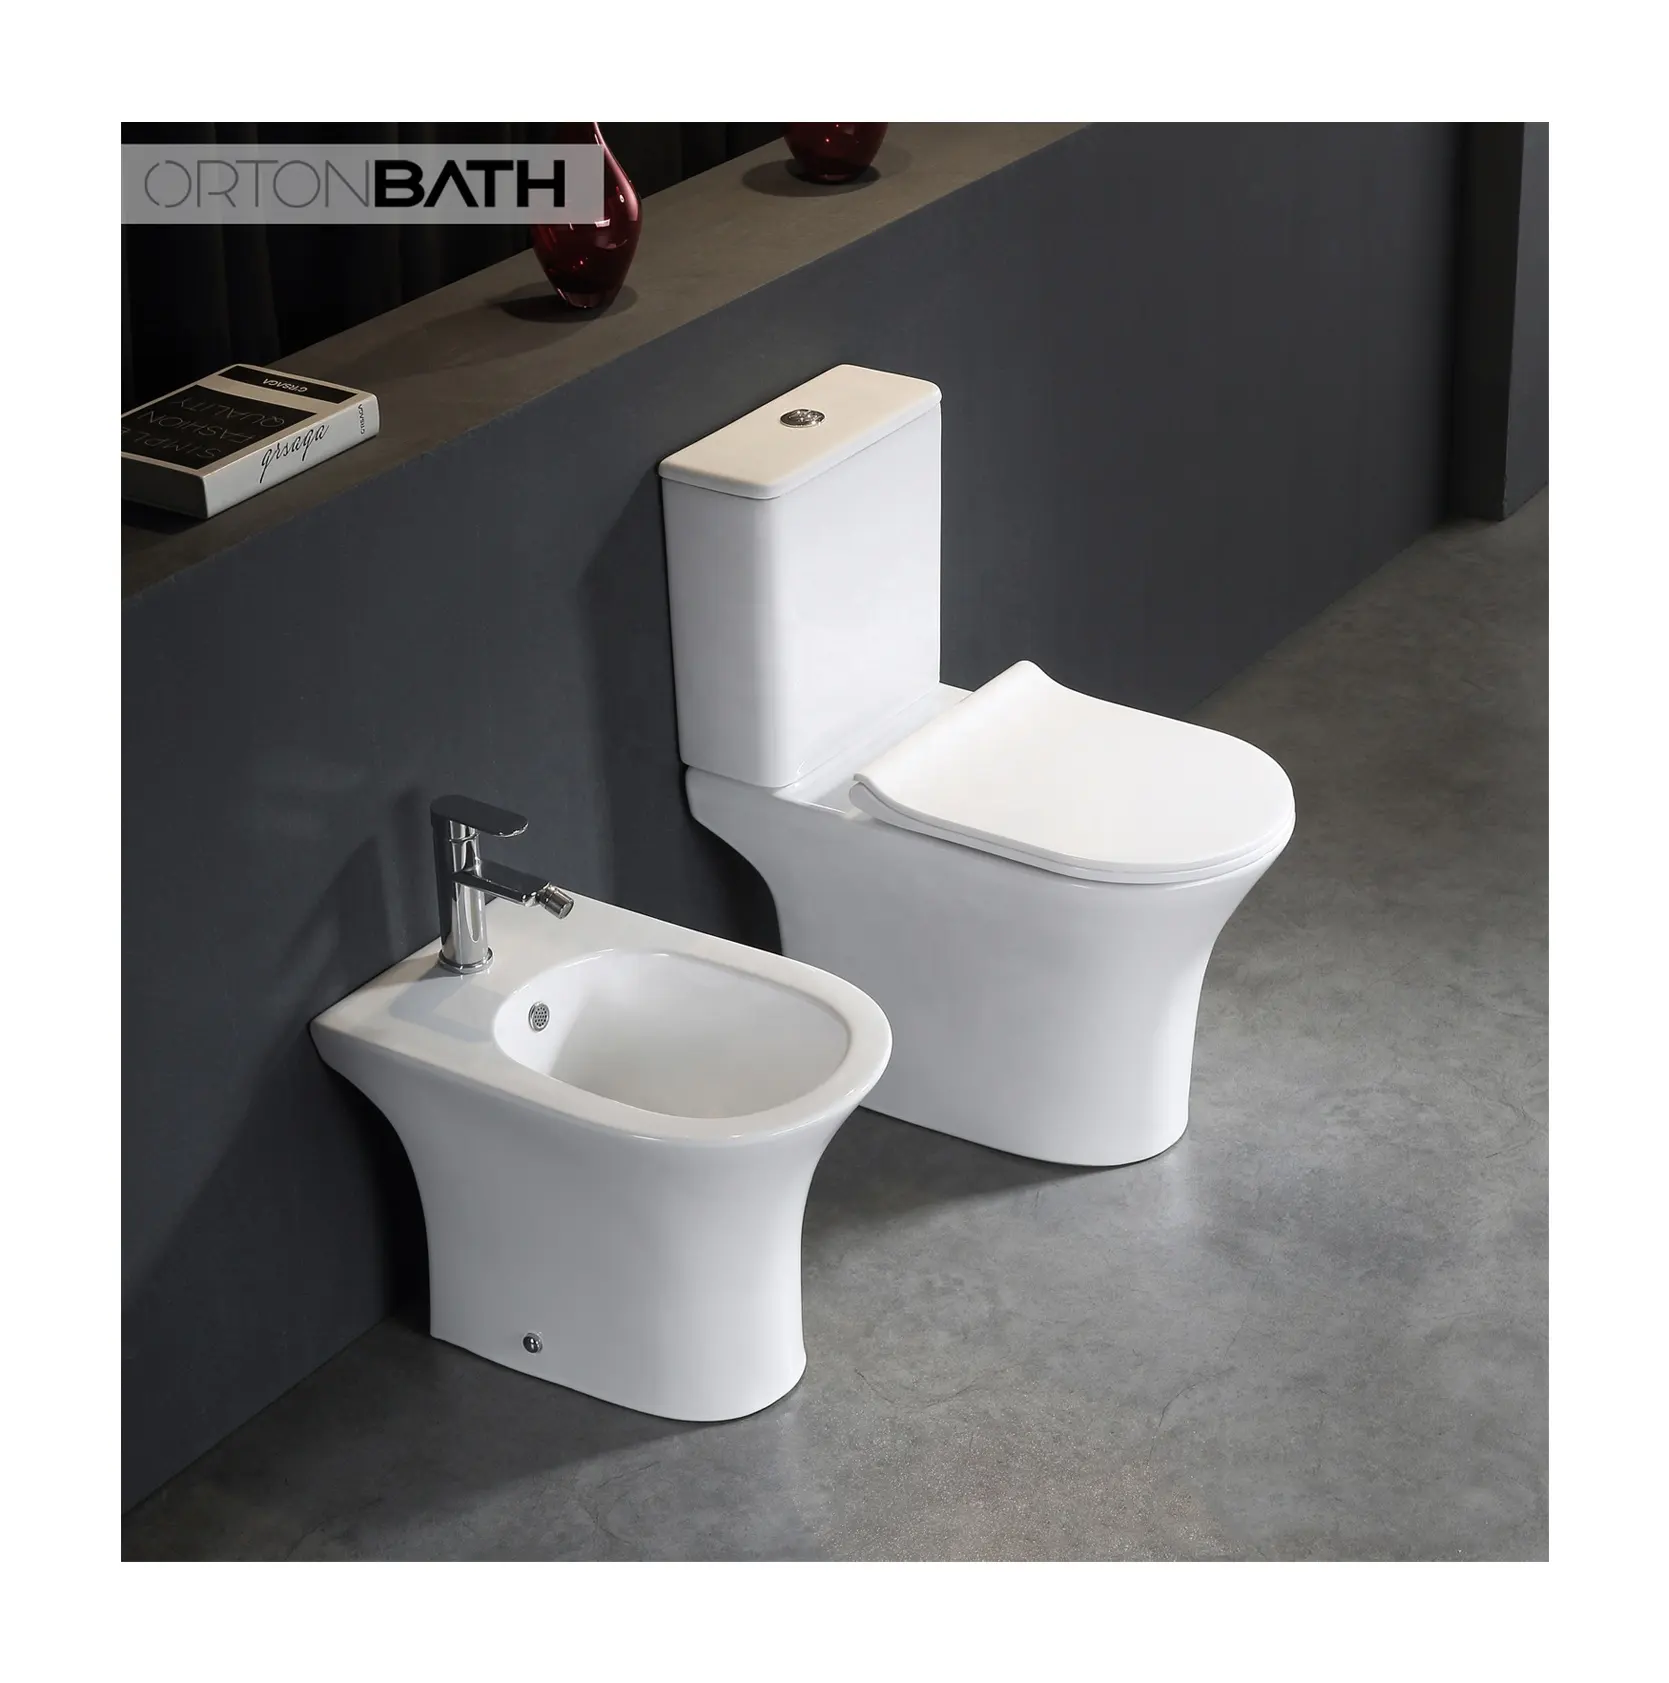 ORTON BATH Toilette Bad Toilette Sanitär artikel Afrika Twyford Ghana Keramik Boden montage Dual-Flush Zweiteilige WC-Toiletten schüssel